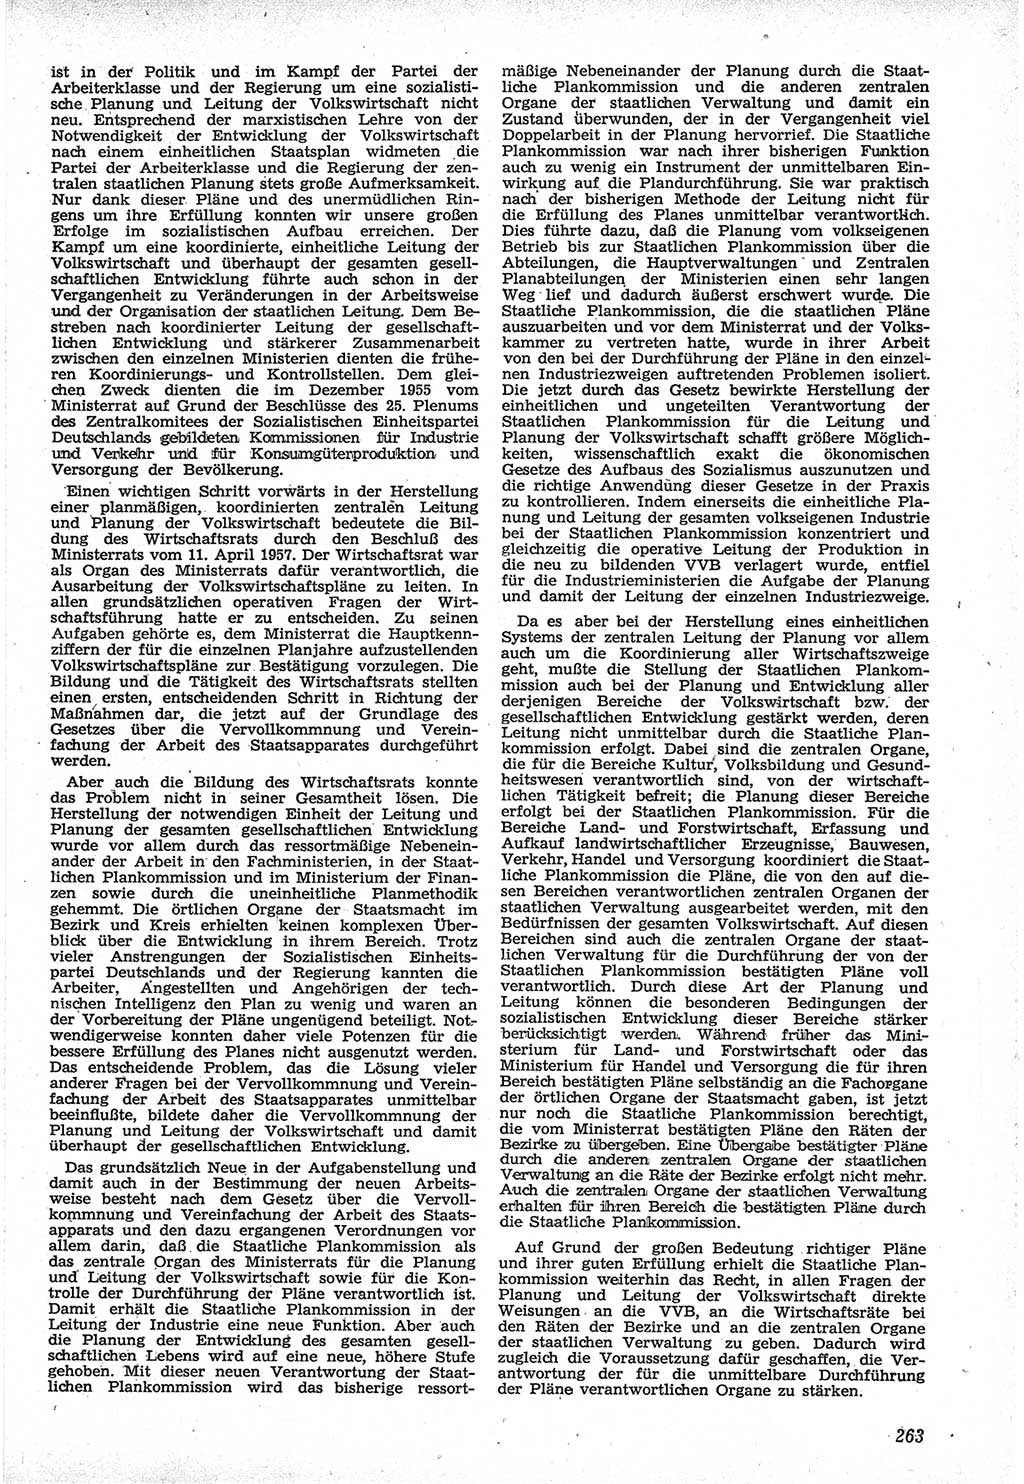 Neue Justiz (NJ), Zeitschrift für Recht und Rechtswissenschaft [Deutsche Demokratische Republik (DDR)], 12. Jahrgang 1958, Seite 263 (NJ DDR 1958, S. 263)